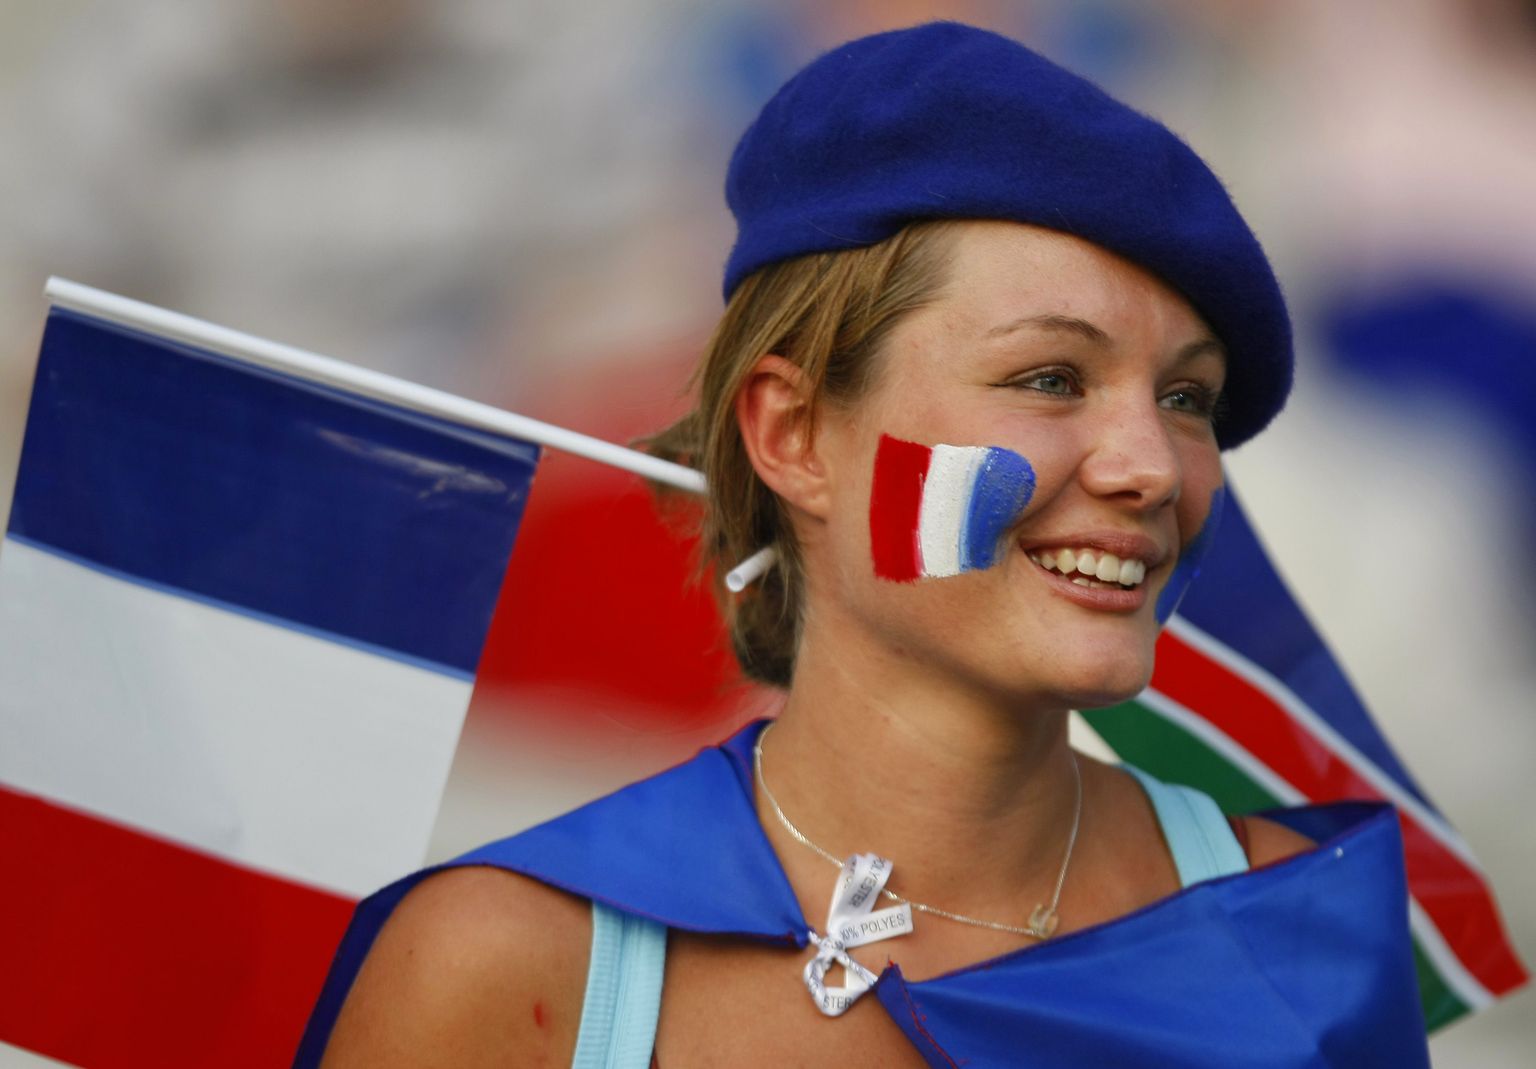 Maailma kõige ebameeldivamad turistid on prantslased